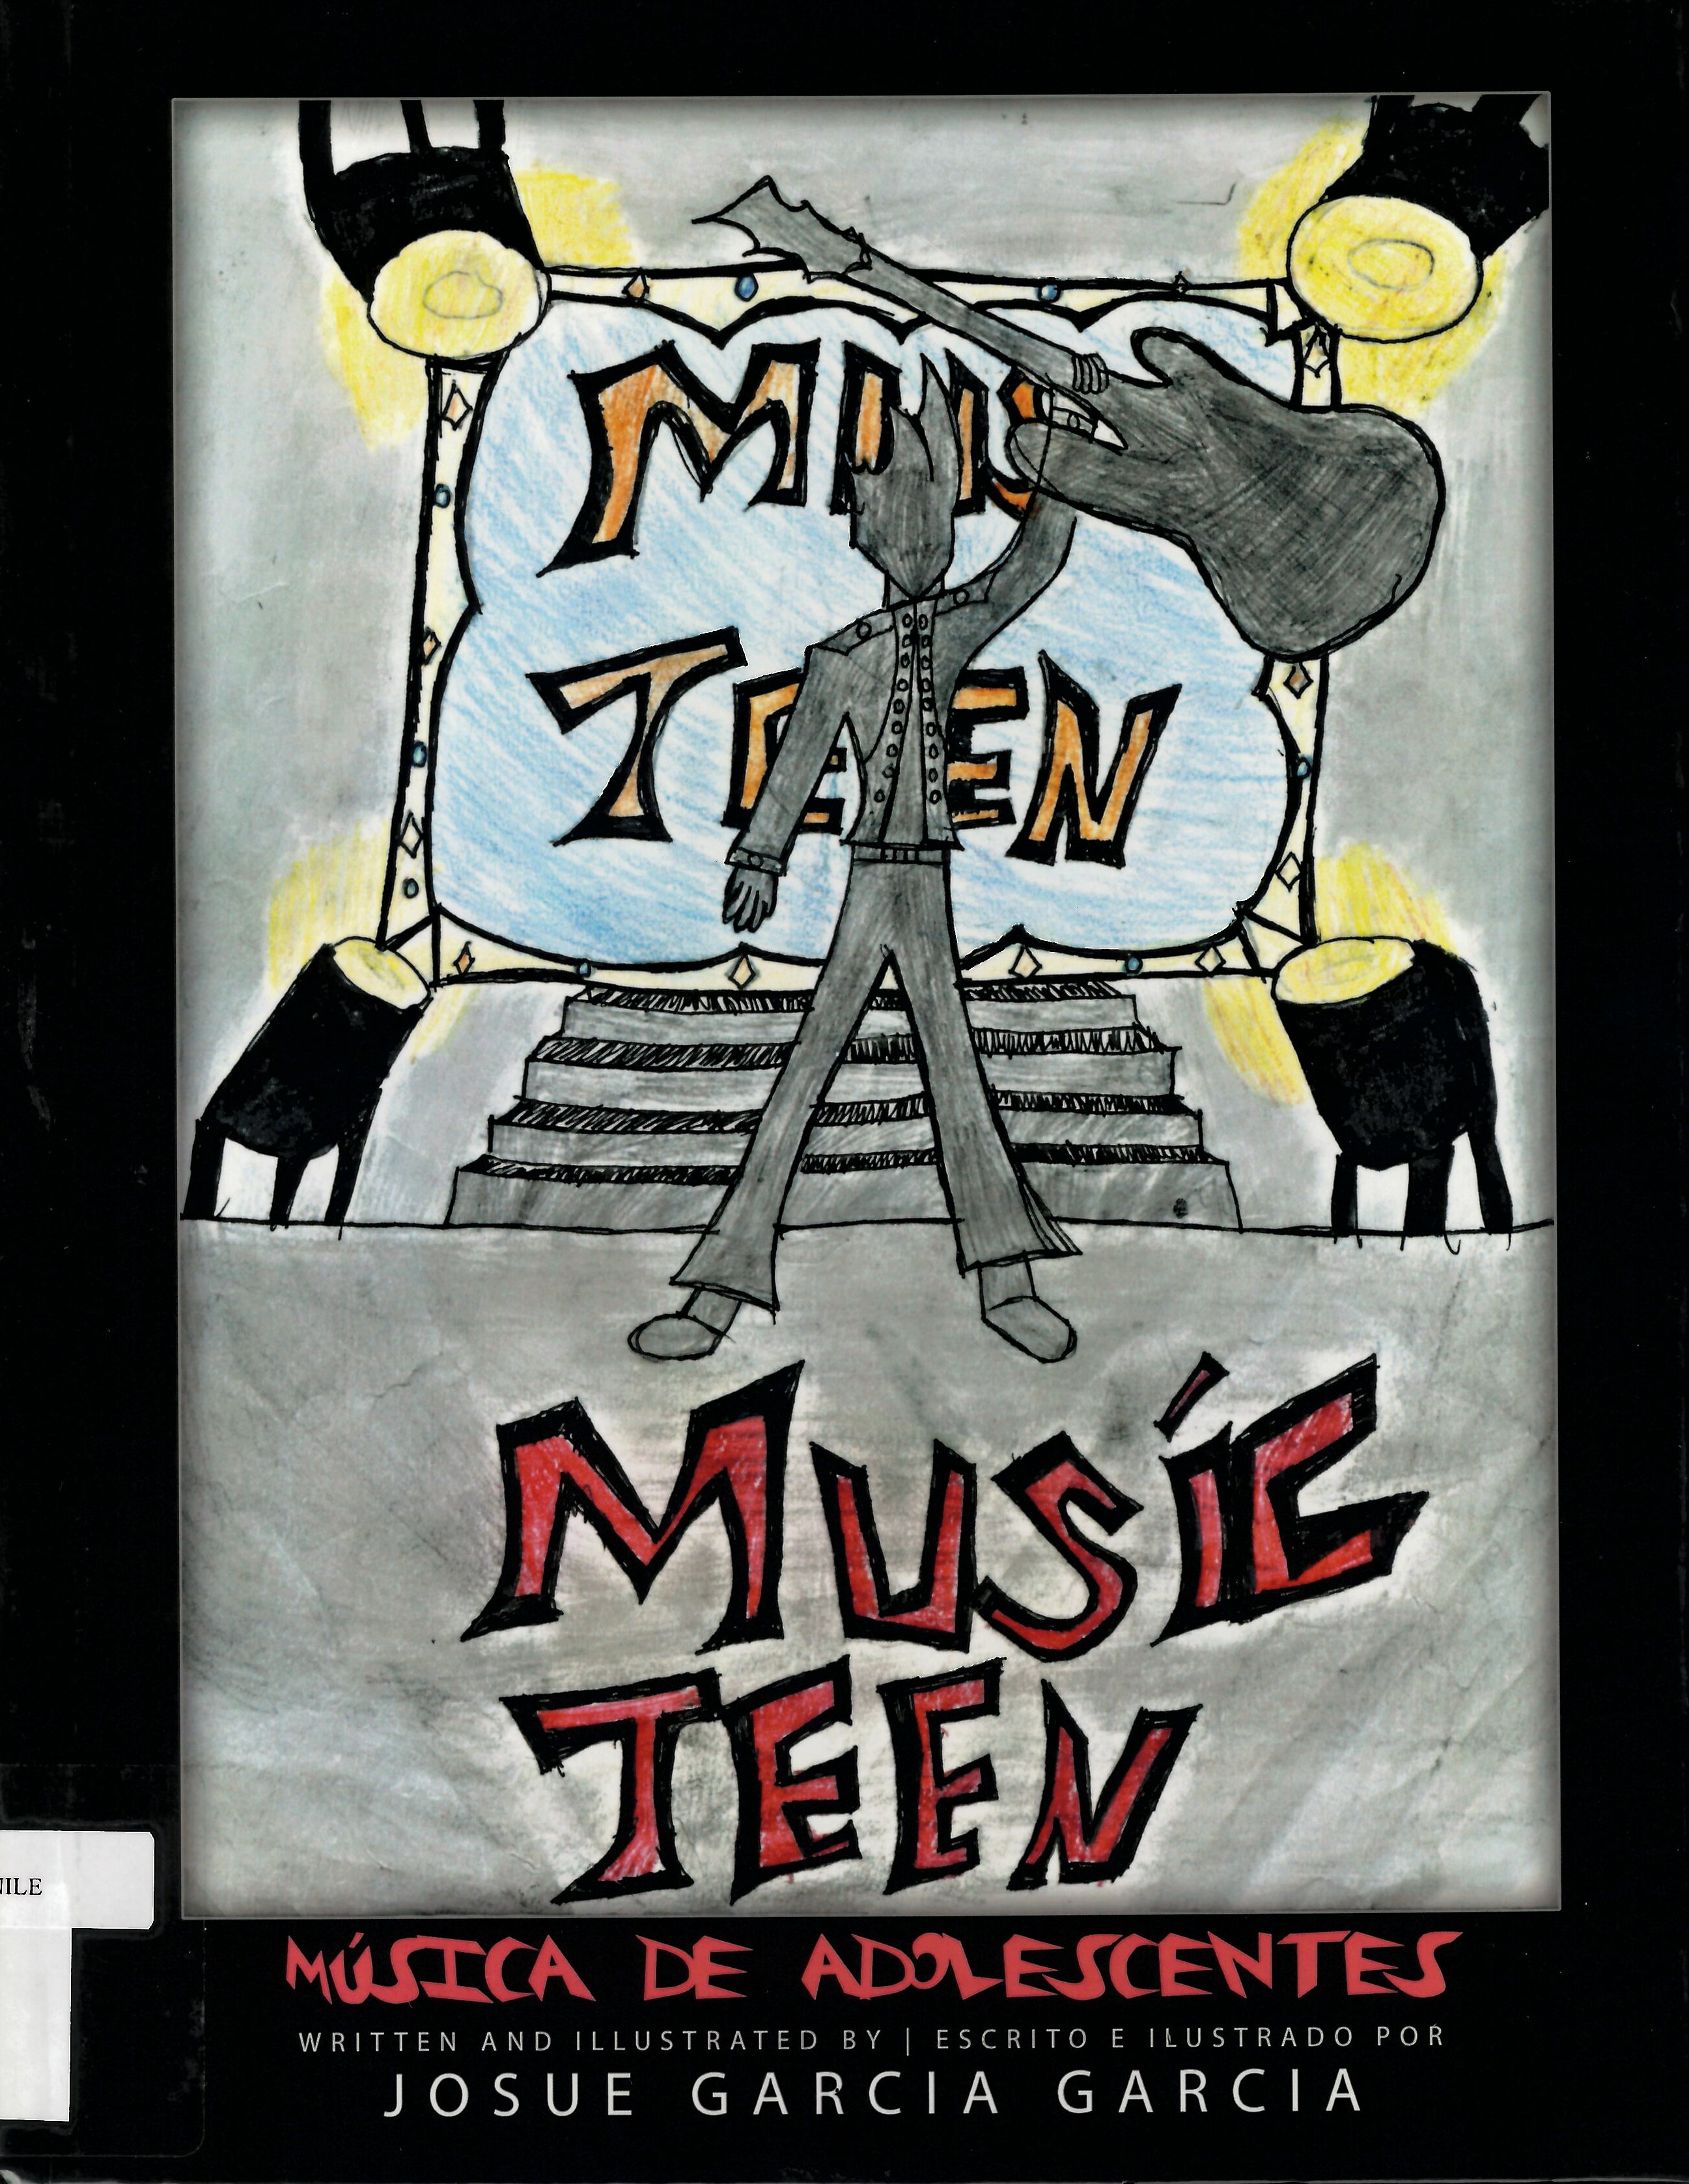 Music teen = musica de adolescentes